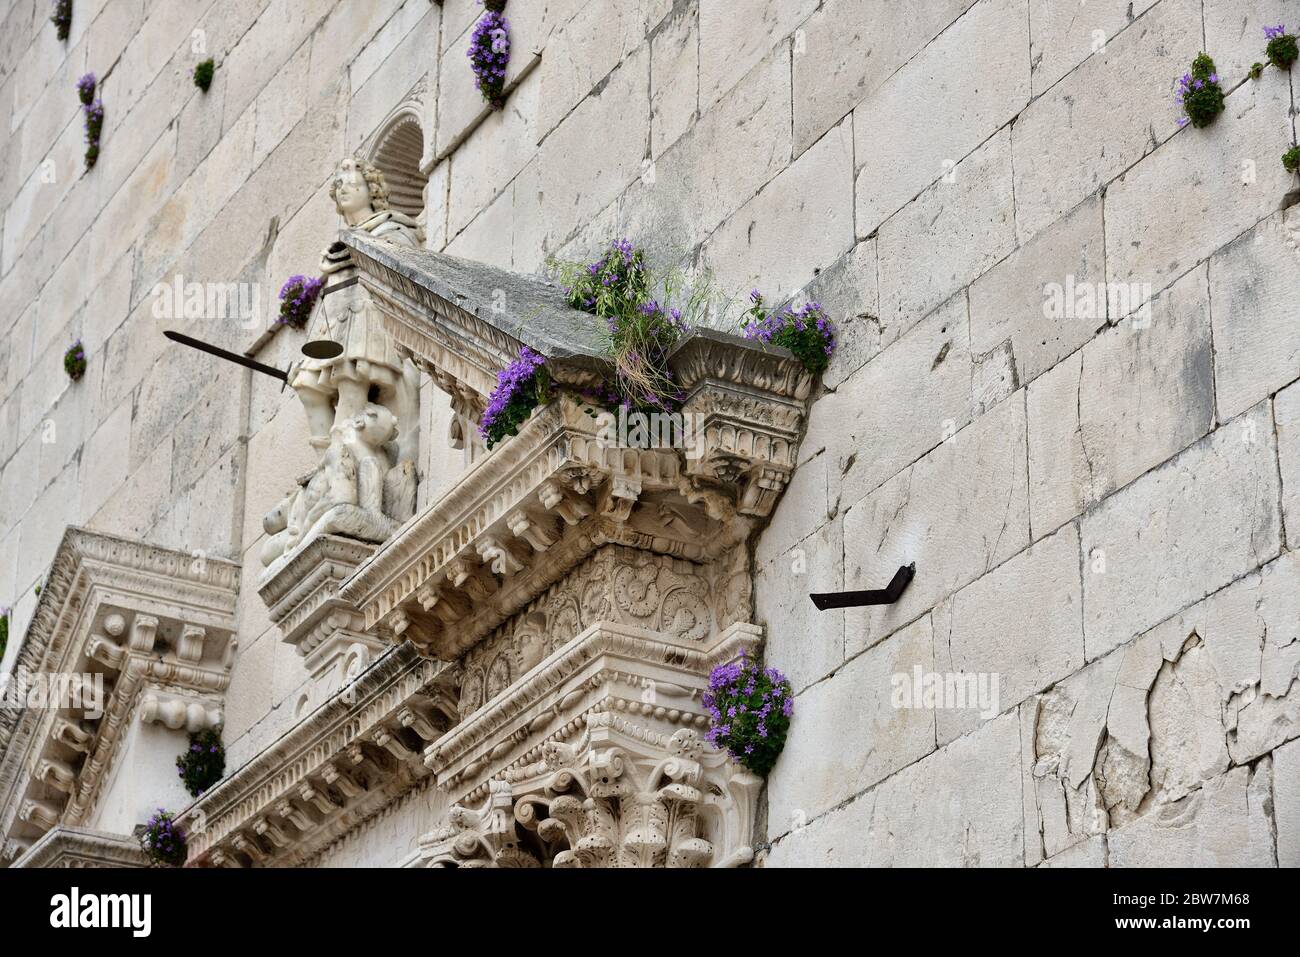 Les fleurs poussent de manière luxuriante sur les murs de l'église principale de la vieille ville d'Omis, Dalmatie, Croatie Banque D'Images